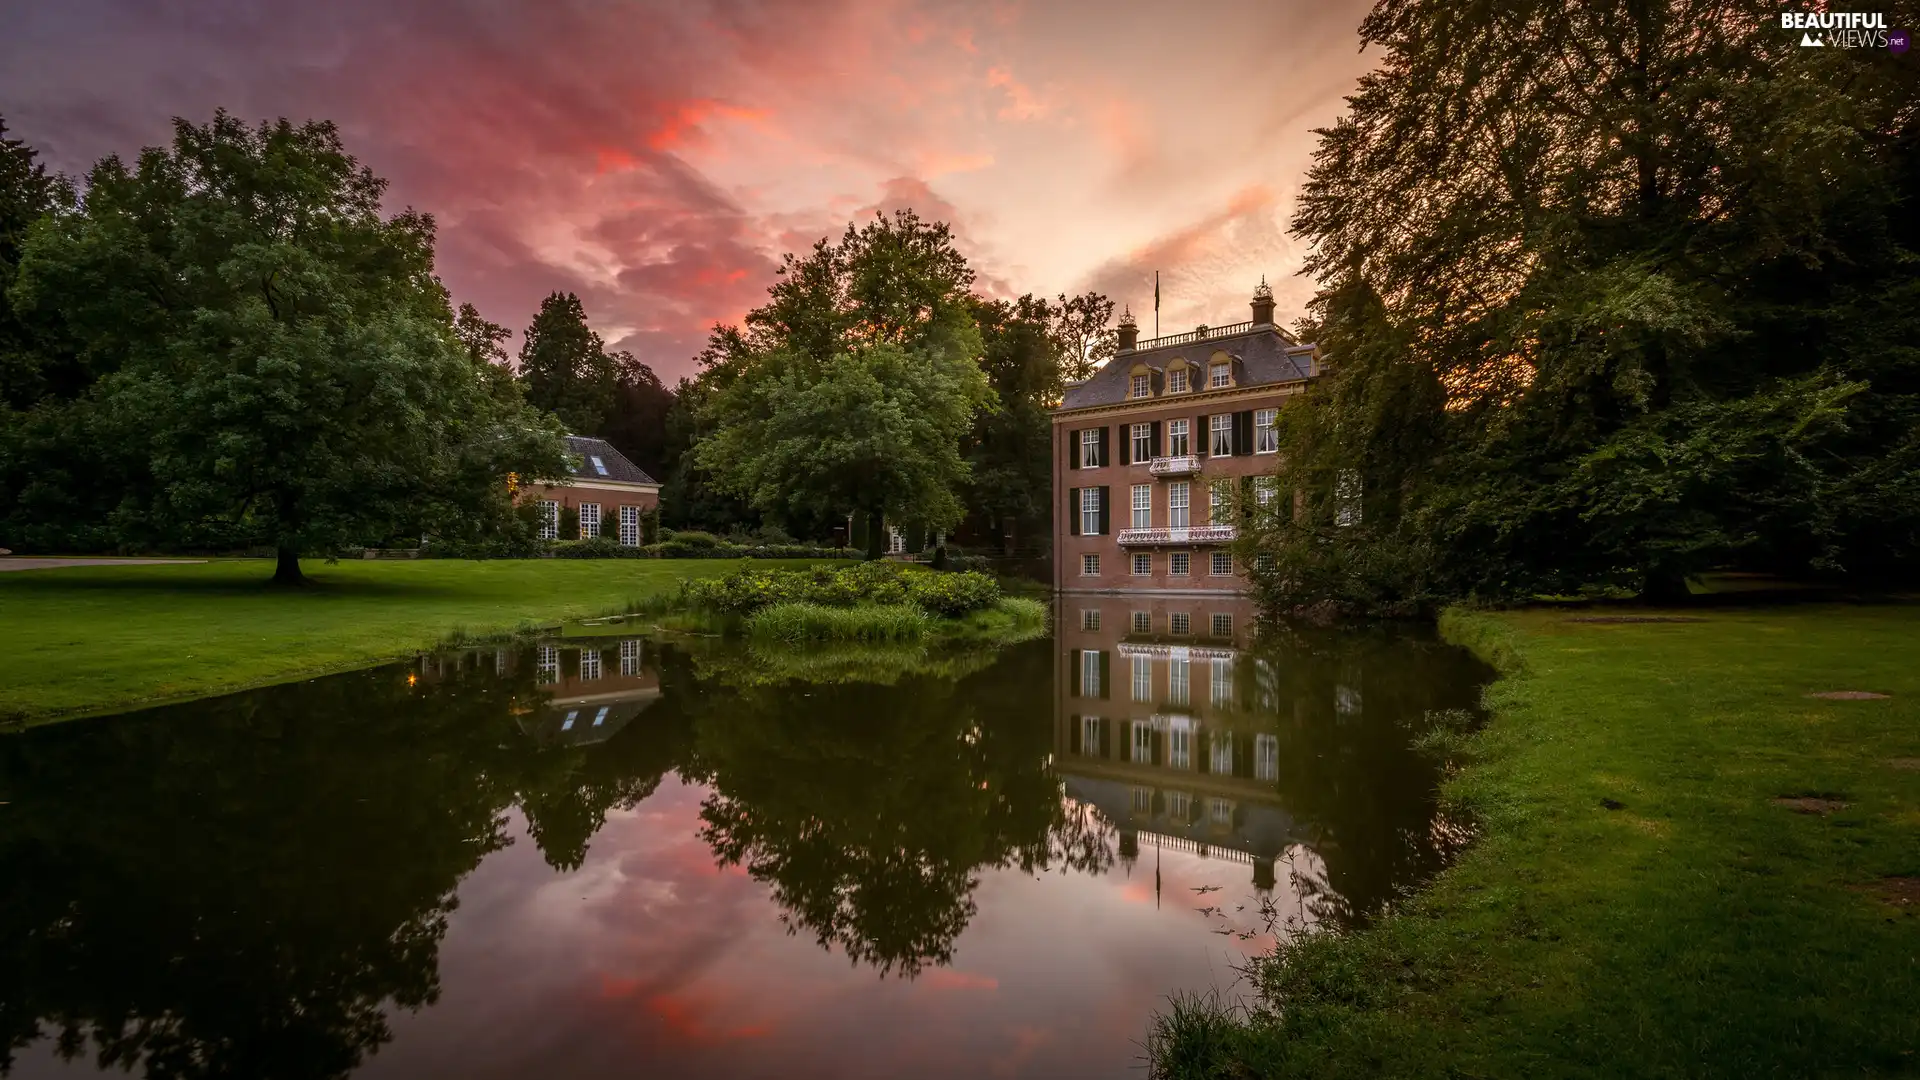 Zypendaal Park, Province of Gelderland, Bransten Family Home Museum - Huis Zypendaal, Arnhem, Netherlands, house, Pond - car